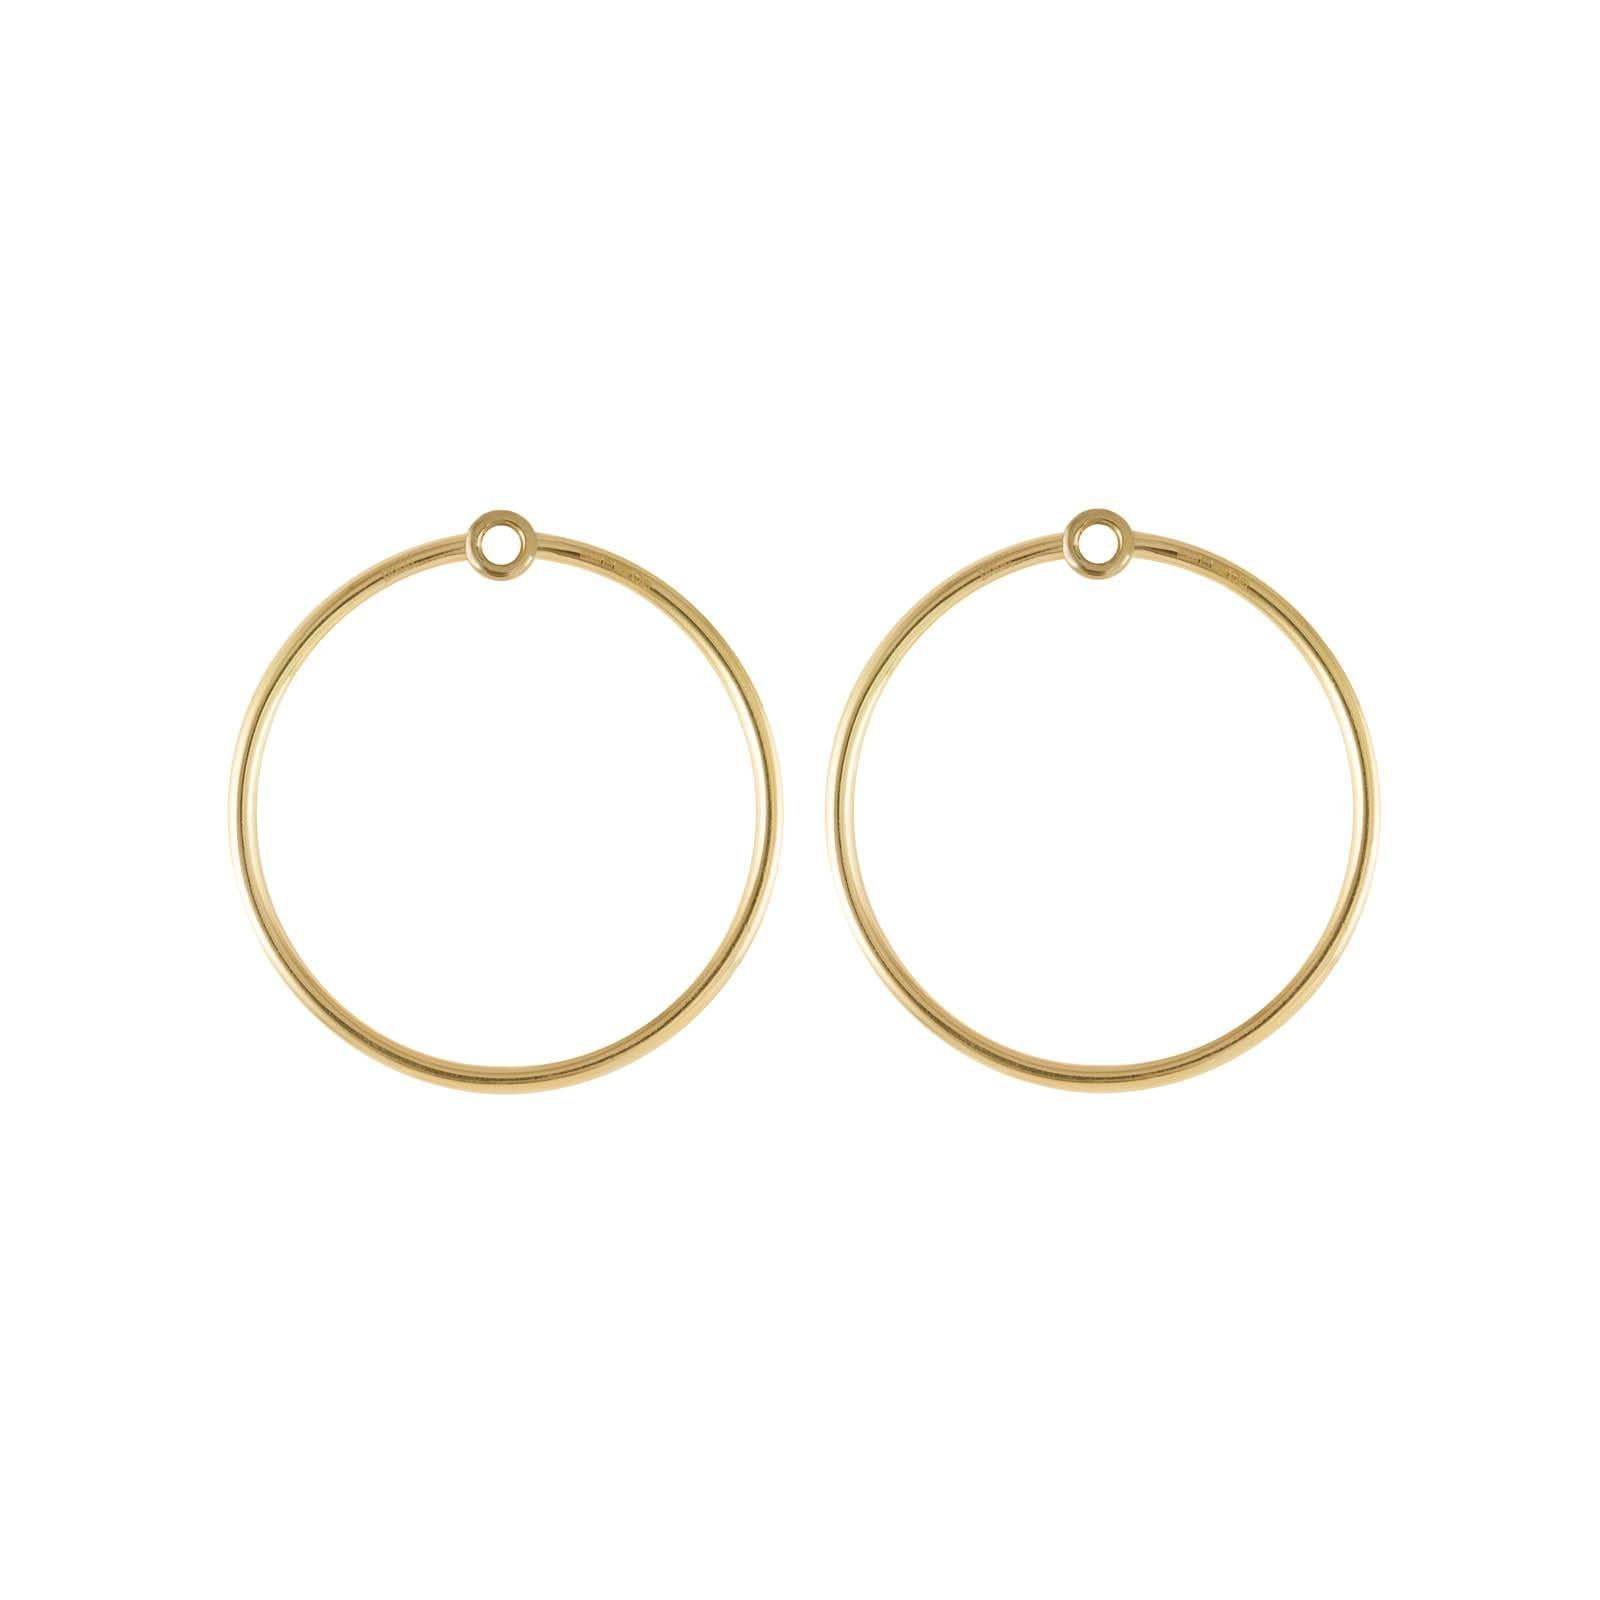 Pear Cut Daou Ruby Pear 18K Gold Convertible Double Orbit Hoops Earrings For Sale